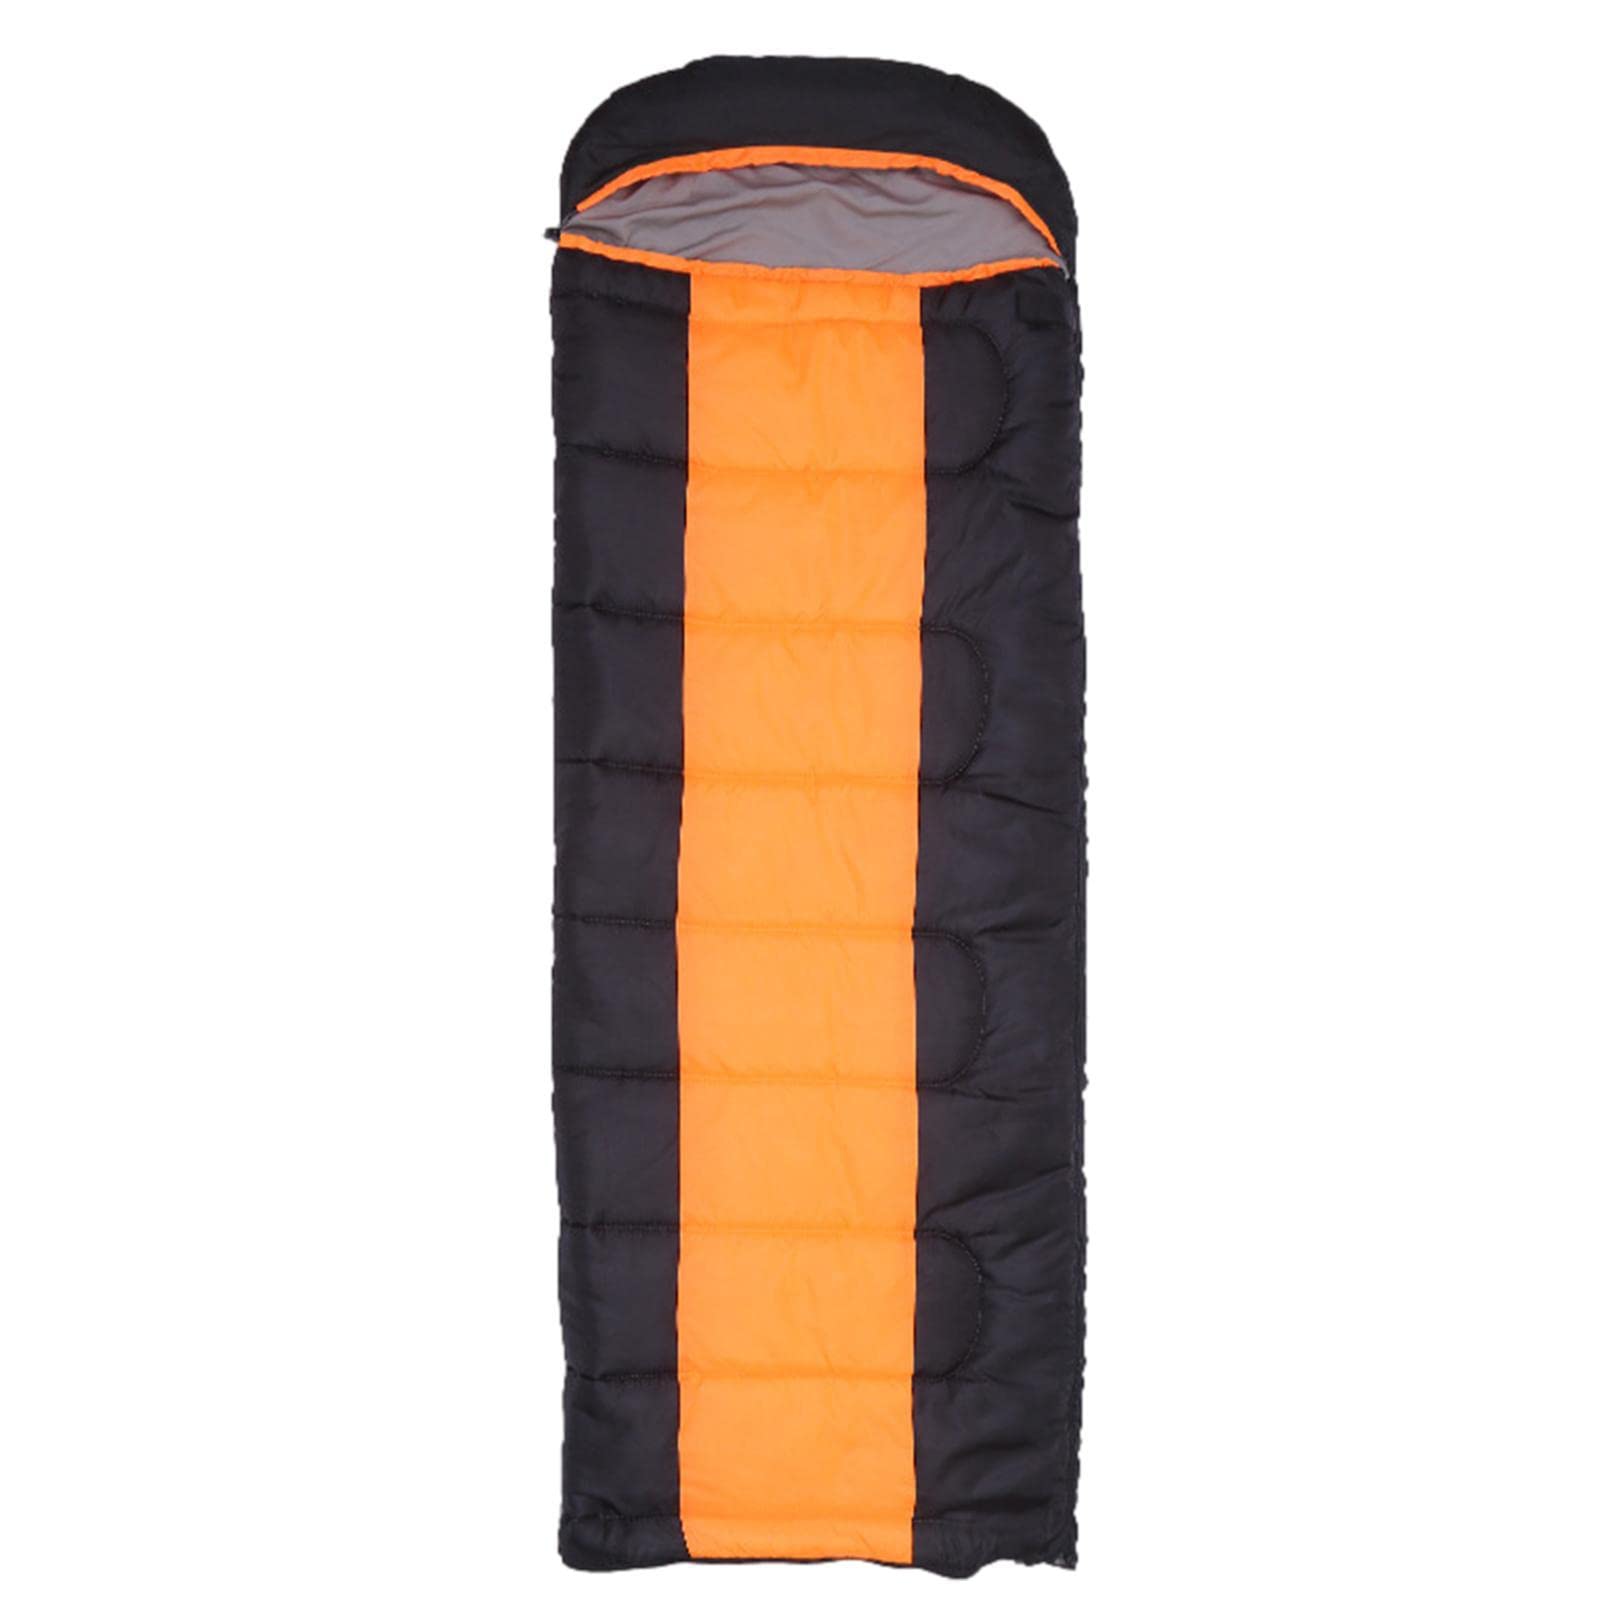 Heizschlafsack | Wasserdichter beheizter Schlafsack mit 4 Heizzonen - Leicht, wasserdicht, kompatibel mit Typ-C/USB-Komfort-Mumientaschen, perfekt für Camping und Wandern Facynde